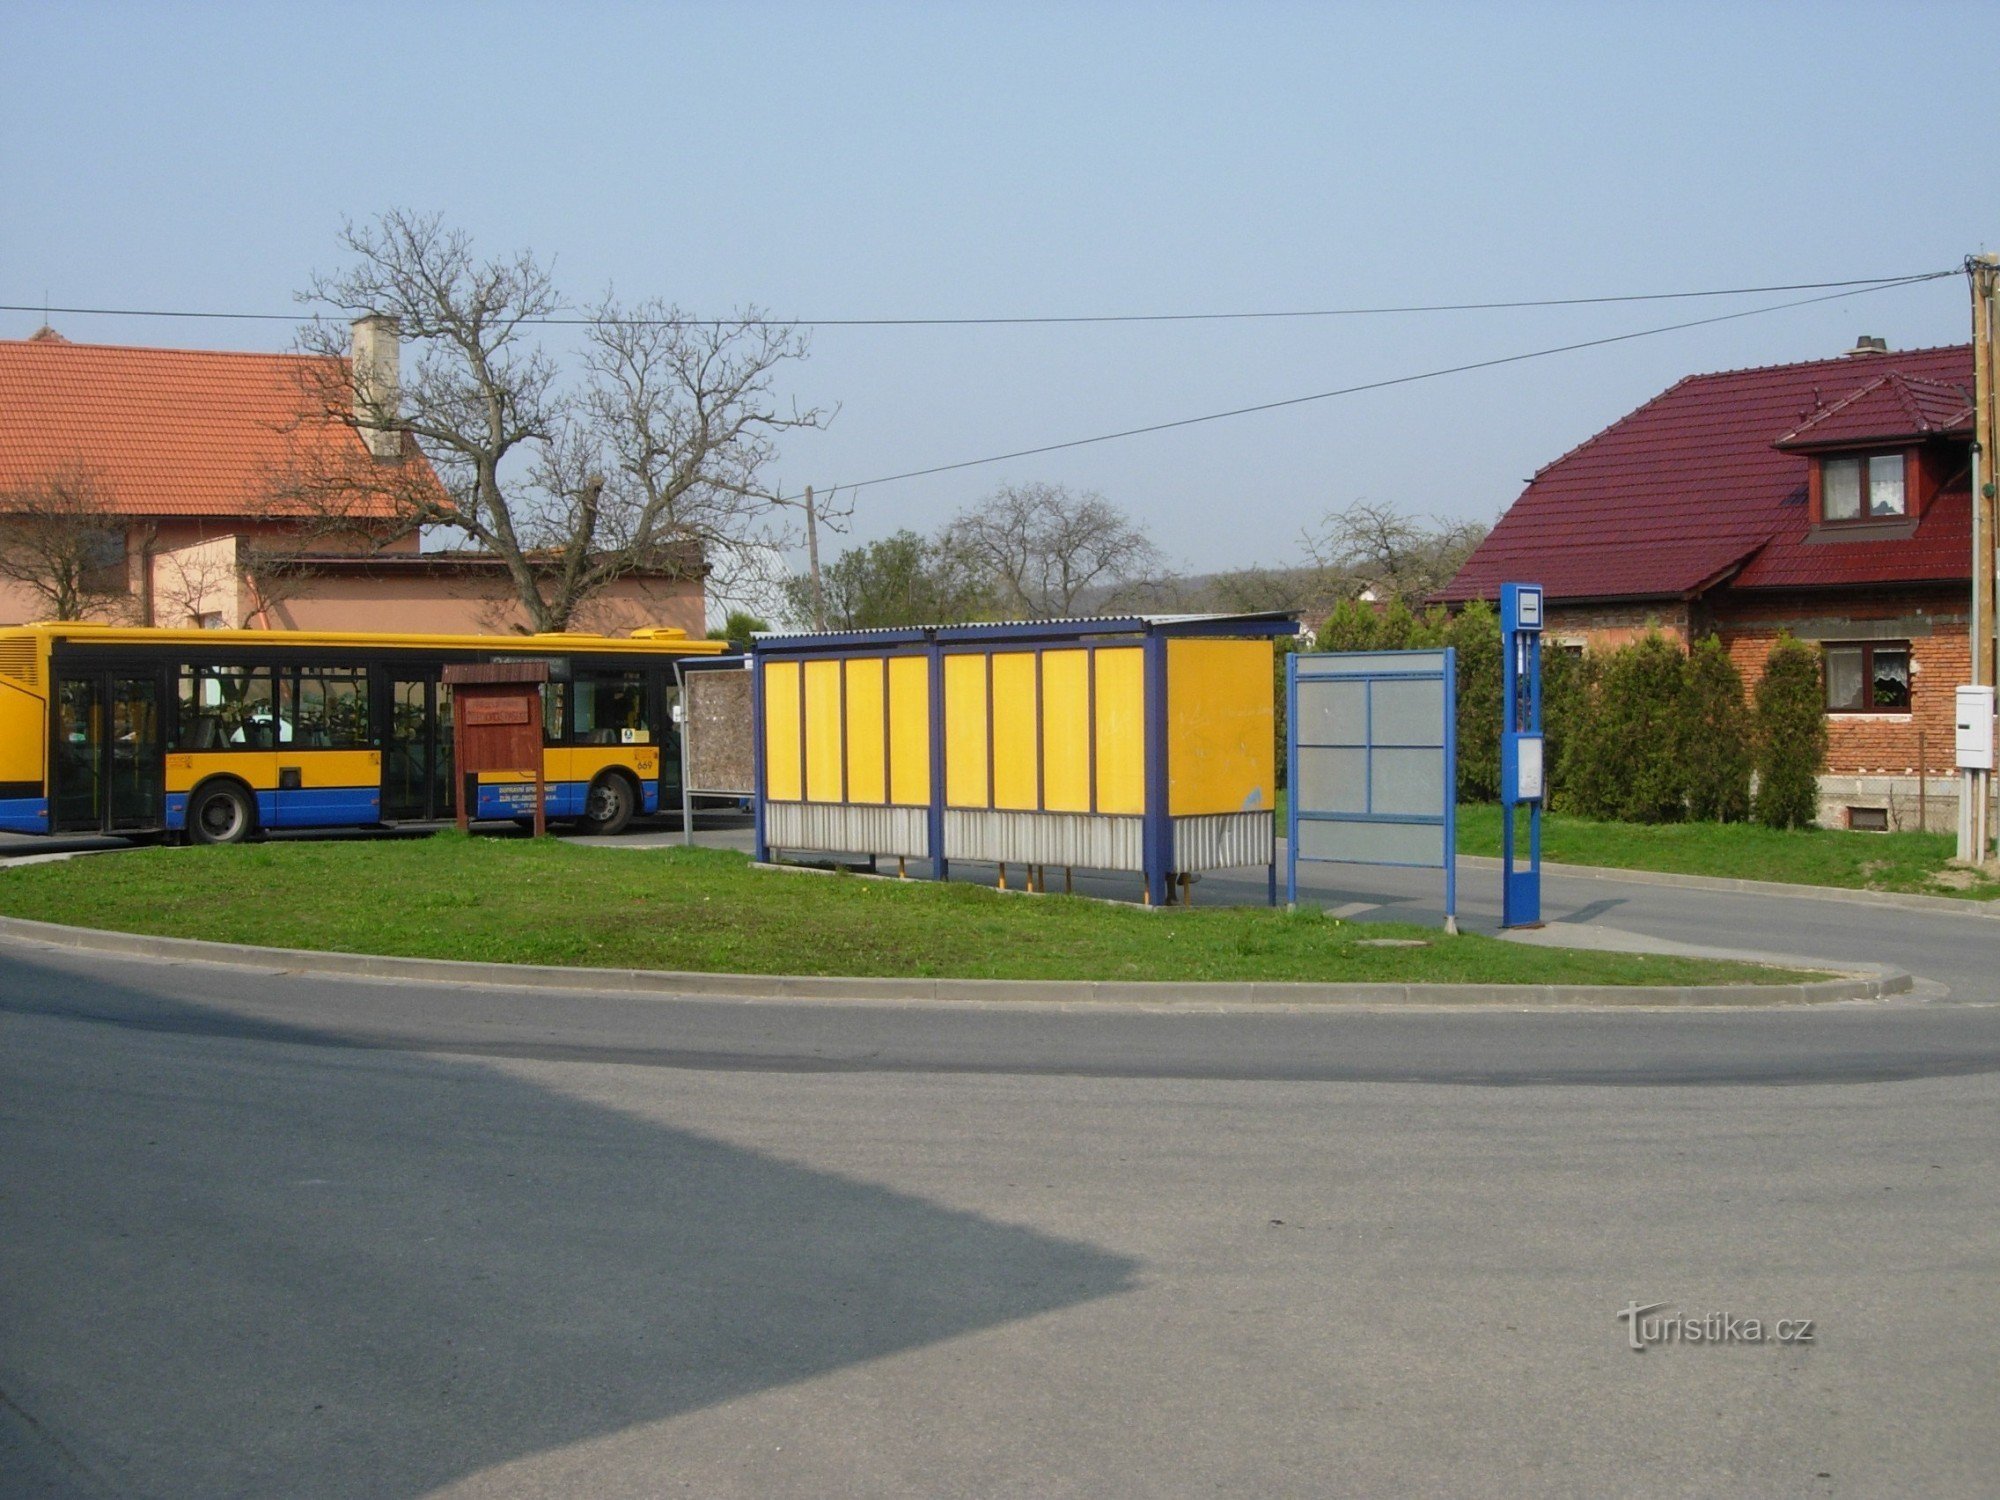 Turnpike à Jaroslavice, début de la route